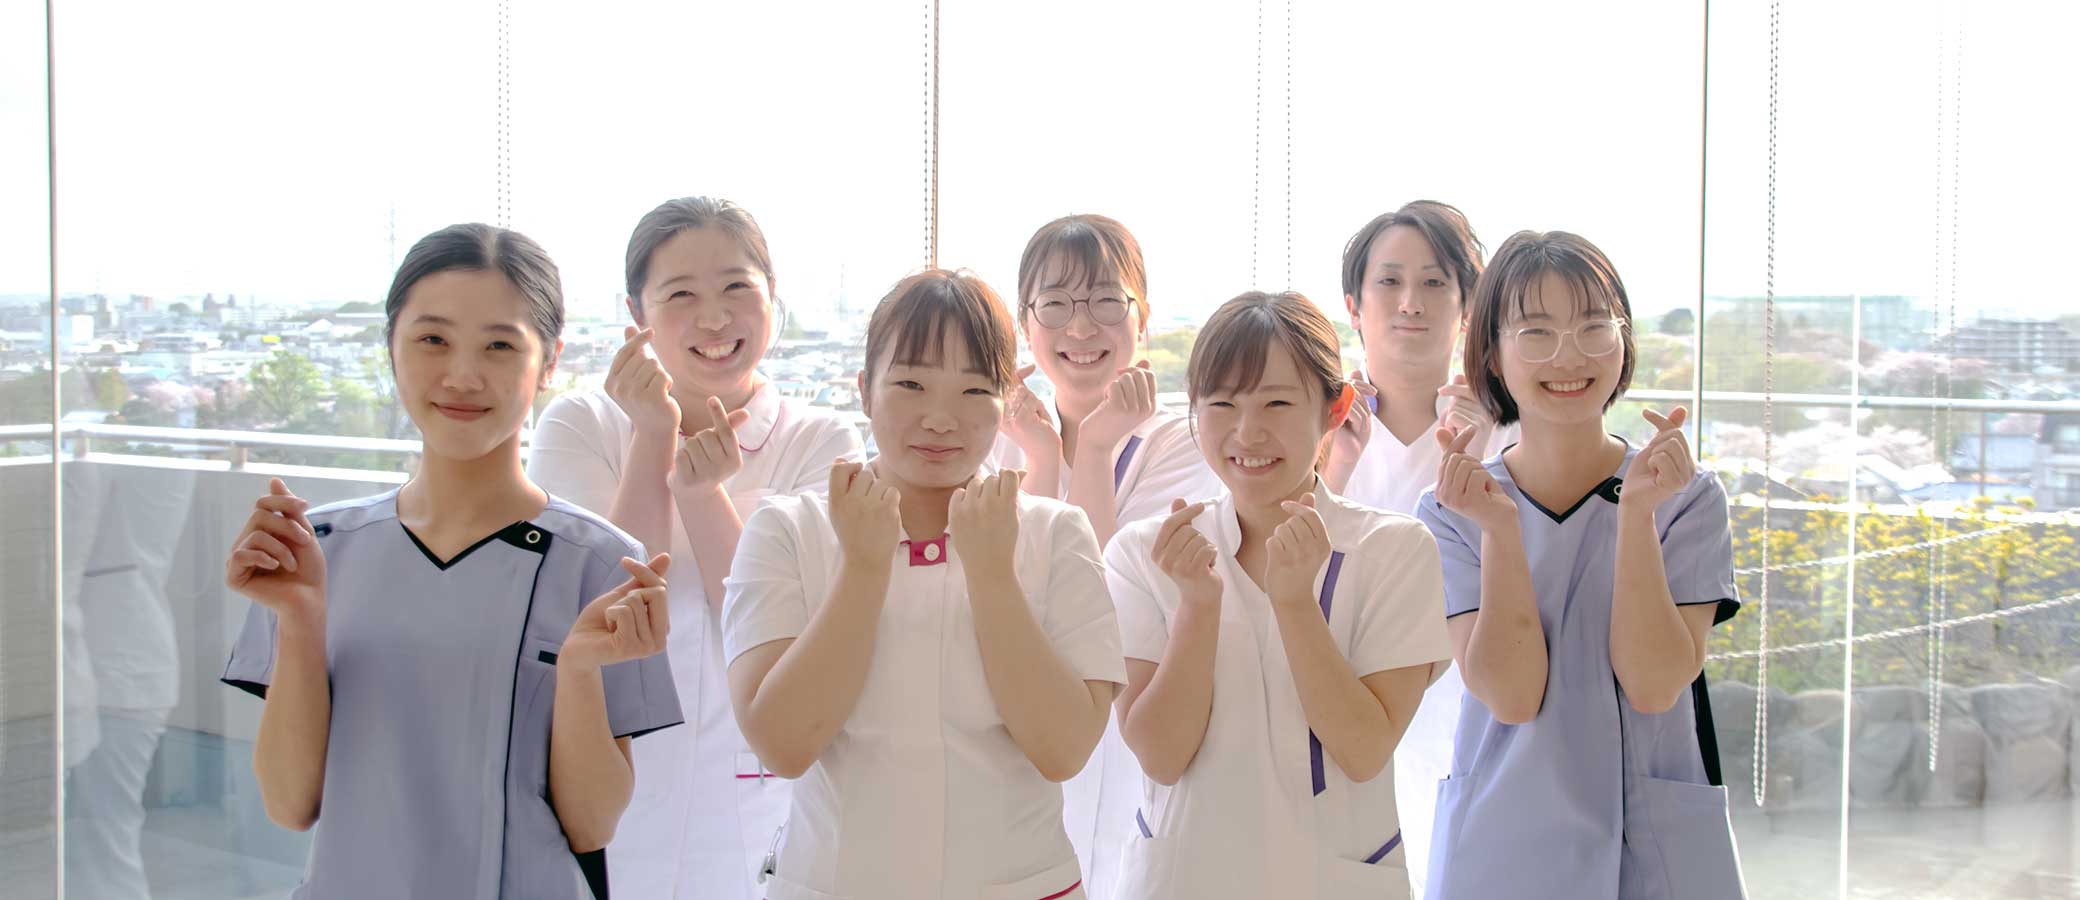 久我山病院では様々な部門で
            看護師が活躍しています。